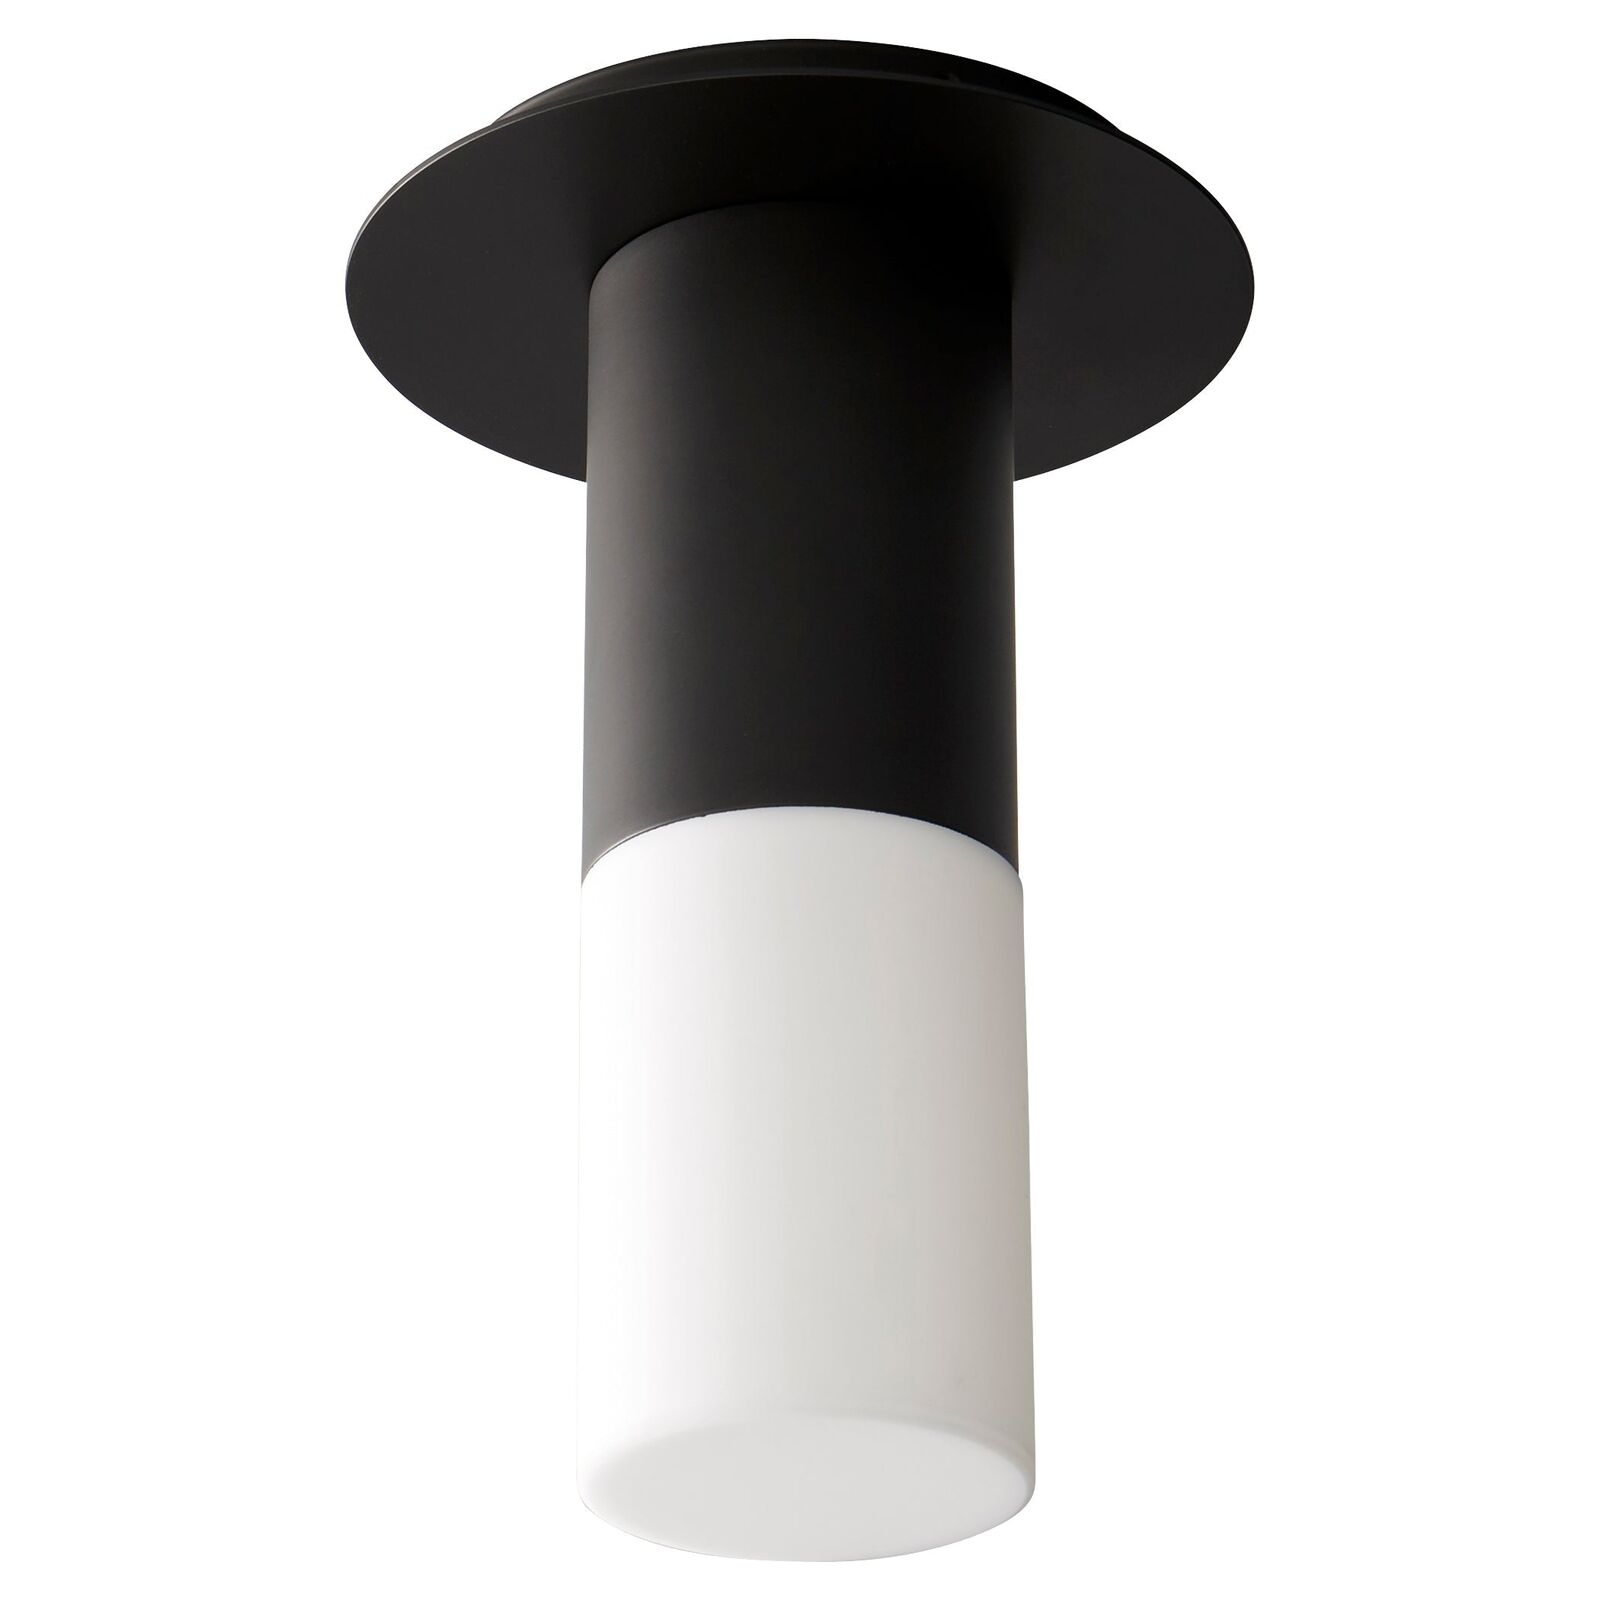 Oxygen Pilar 3-308-115 LED Cylinder Flush Mount Ceiling Light Fixture - Black